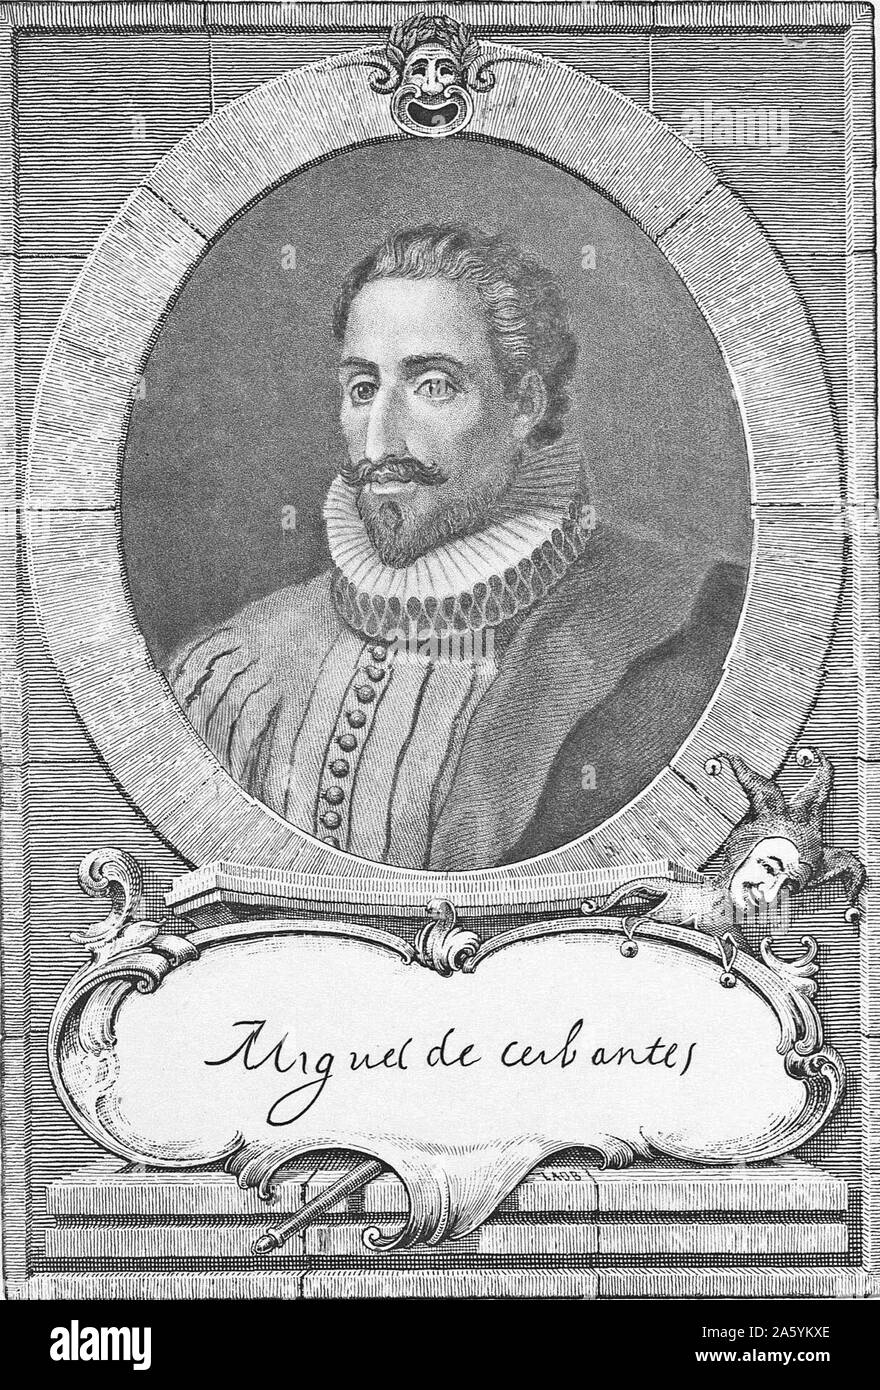 L'espagnol Miguel de Cervantes, romancier, poète et dramaturge. Son Don Quichotte est considéré comme le premier roman moderne. Gravure du xixe siècle Banque D'Images